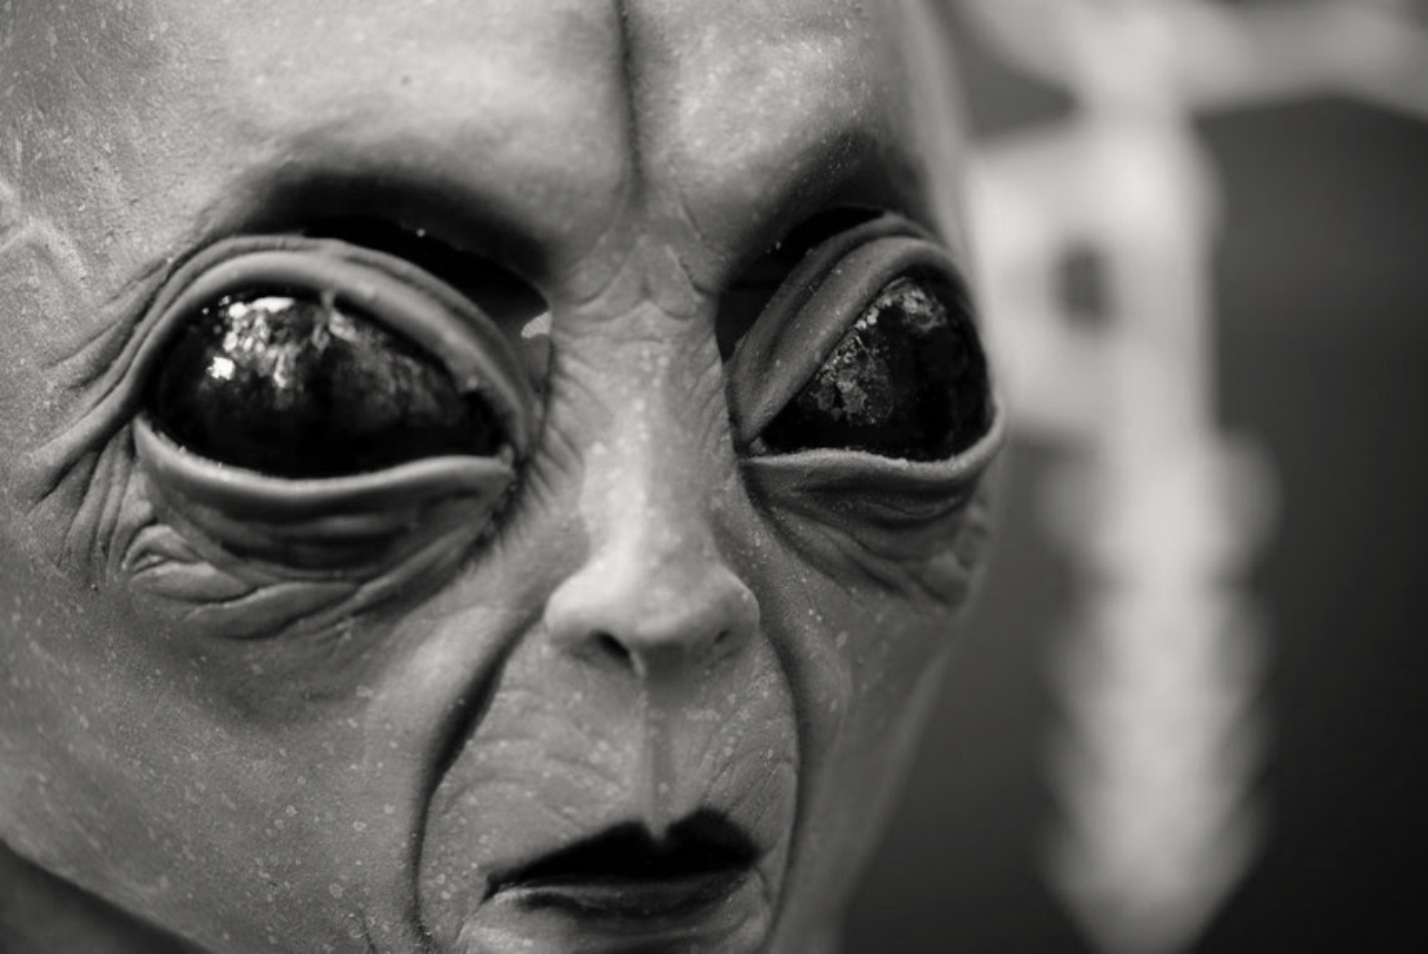 Project Serpo: The secret exchange between aliens and humans 2